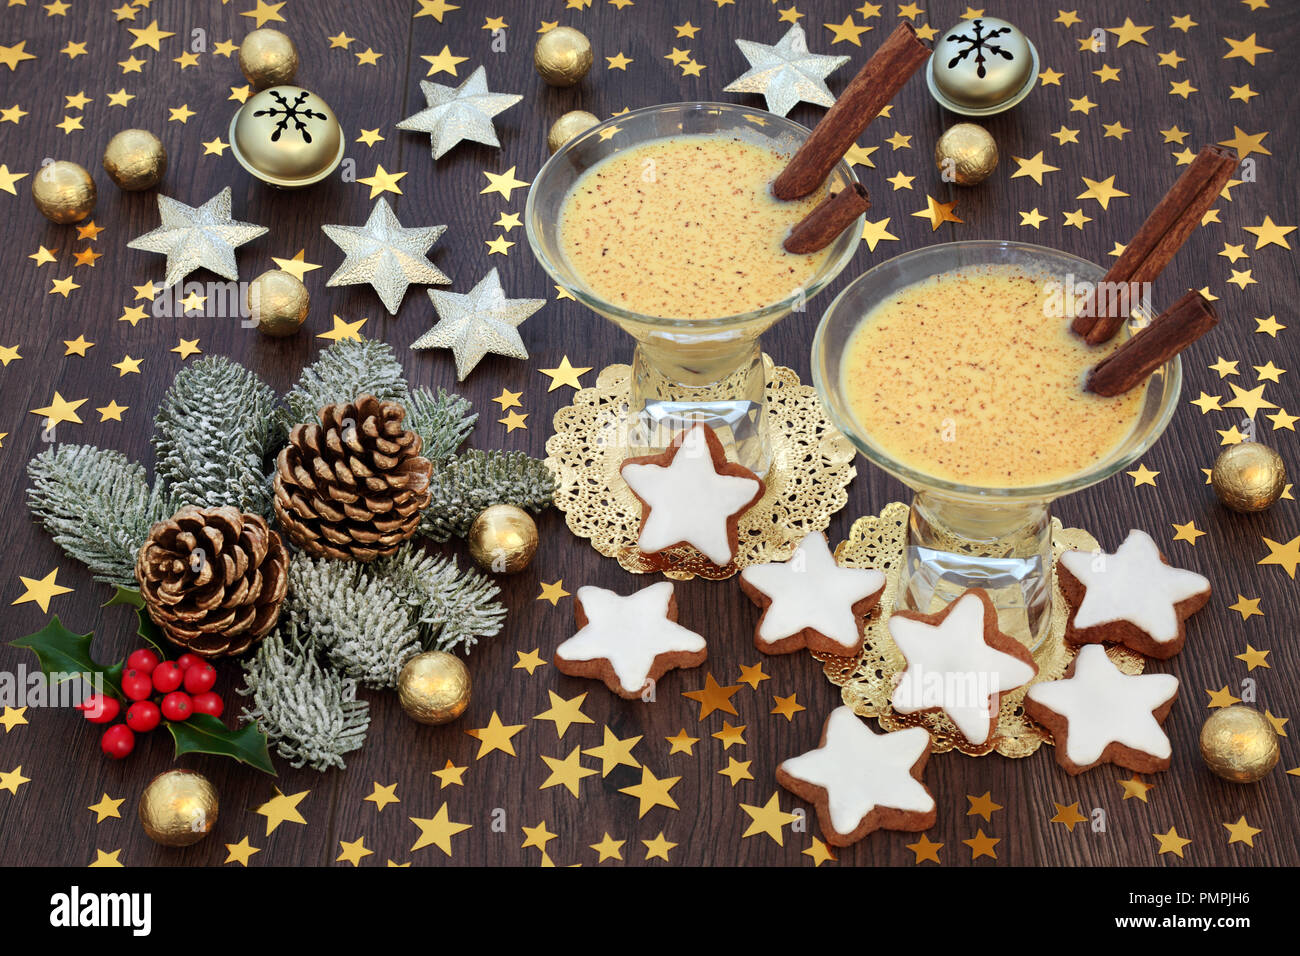 Natale tradizionale bevanda zabaione con biscotti di panpepato, stella in oro e decorazioni a campana, stagnola avvolto le sfere di cioccolato con flora d'inverno. Foto Stock